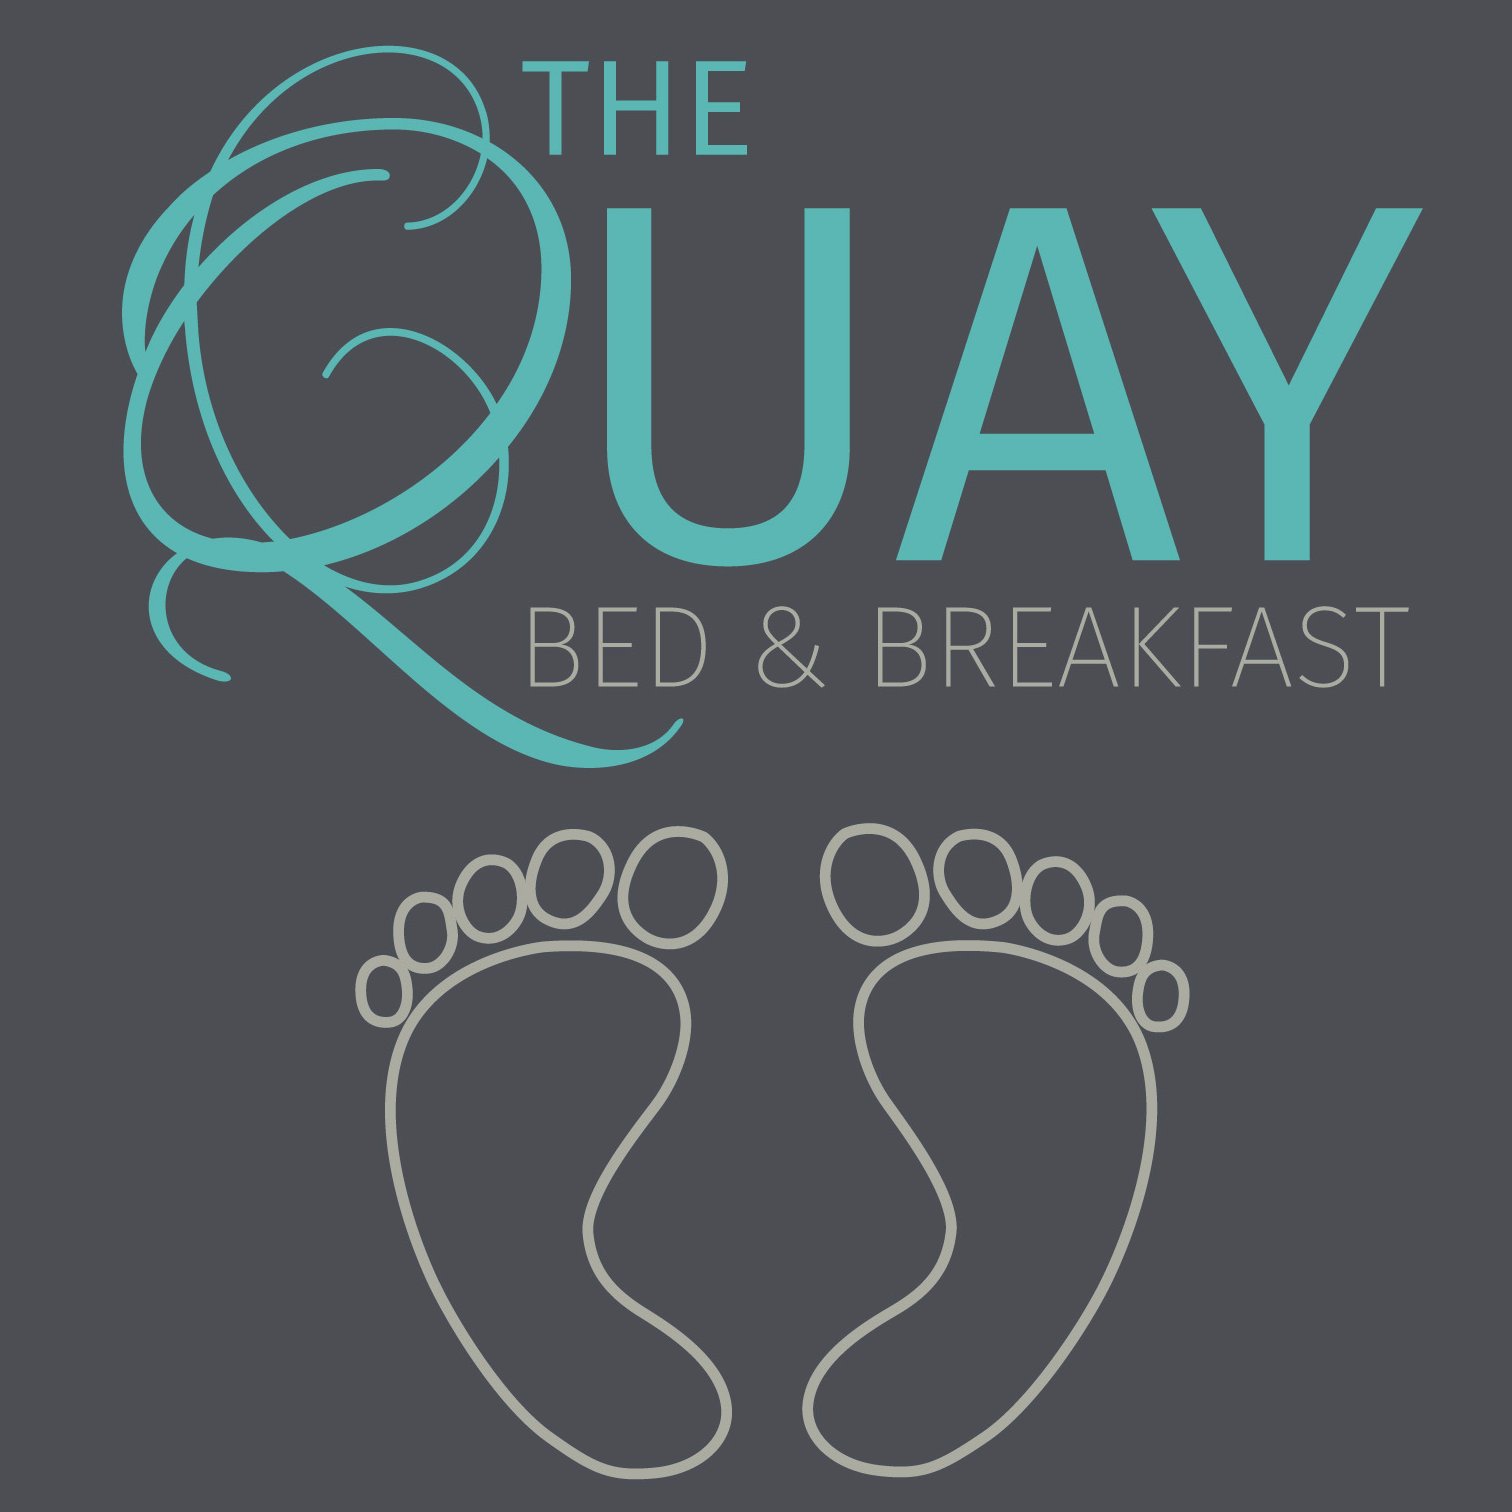 Brand new #luxury Bed & Breakfast #accommodation in Wells-next-the-Sea, Norfolk offering 8 quiet, comfortable en suite rooms - 01328 710898